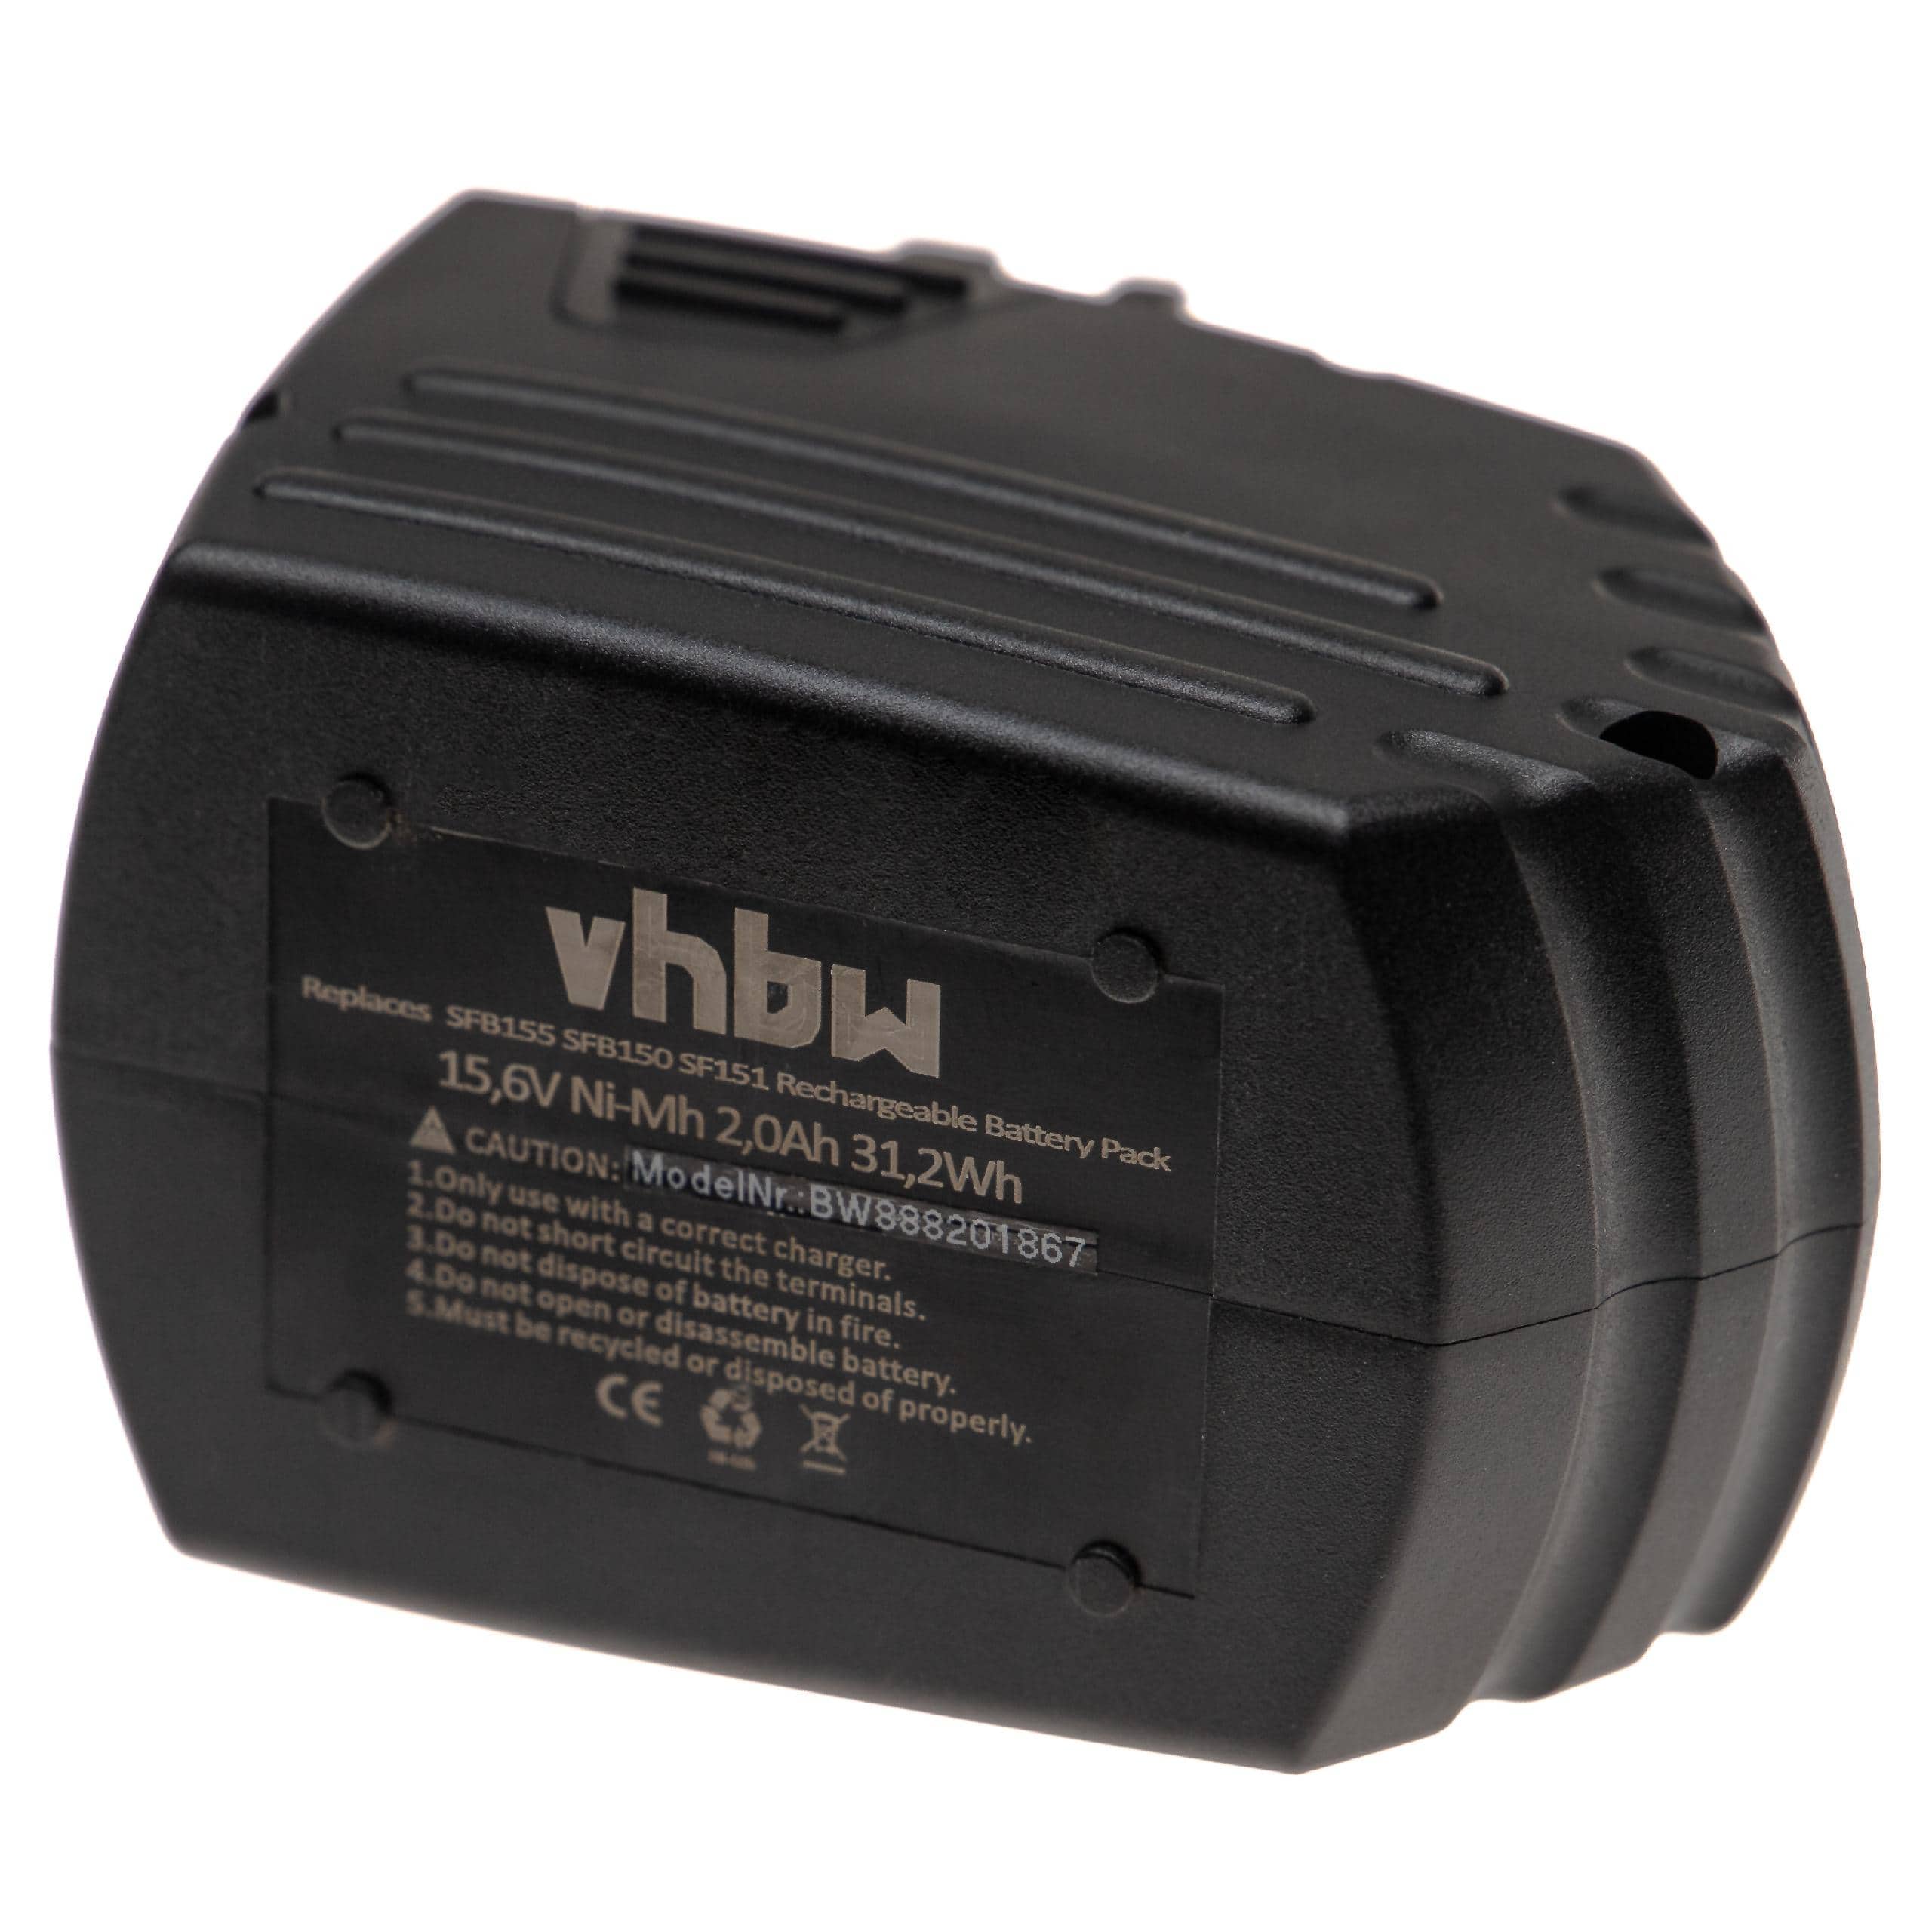 Batterie remplace Hilti SFB155, SFB150 pour outil électrique - 2000 mAh, 15,6 V, NiMH